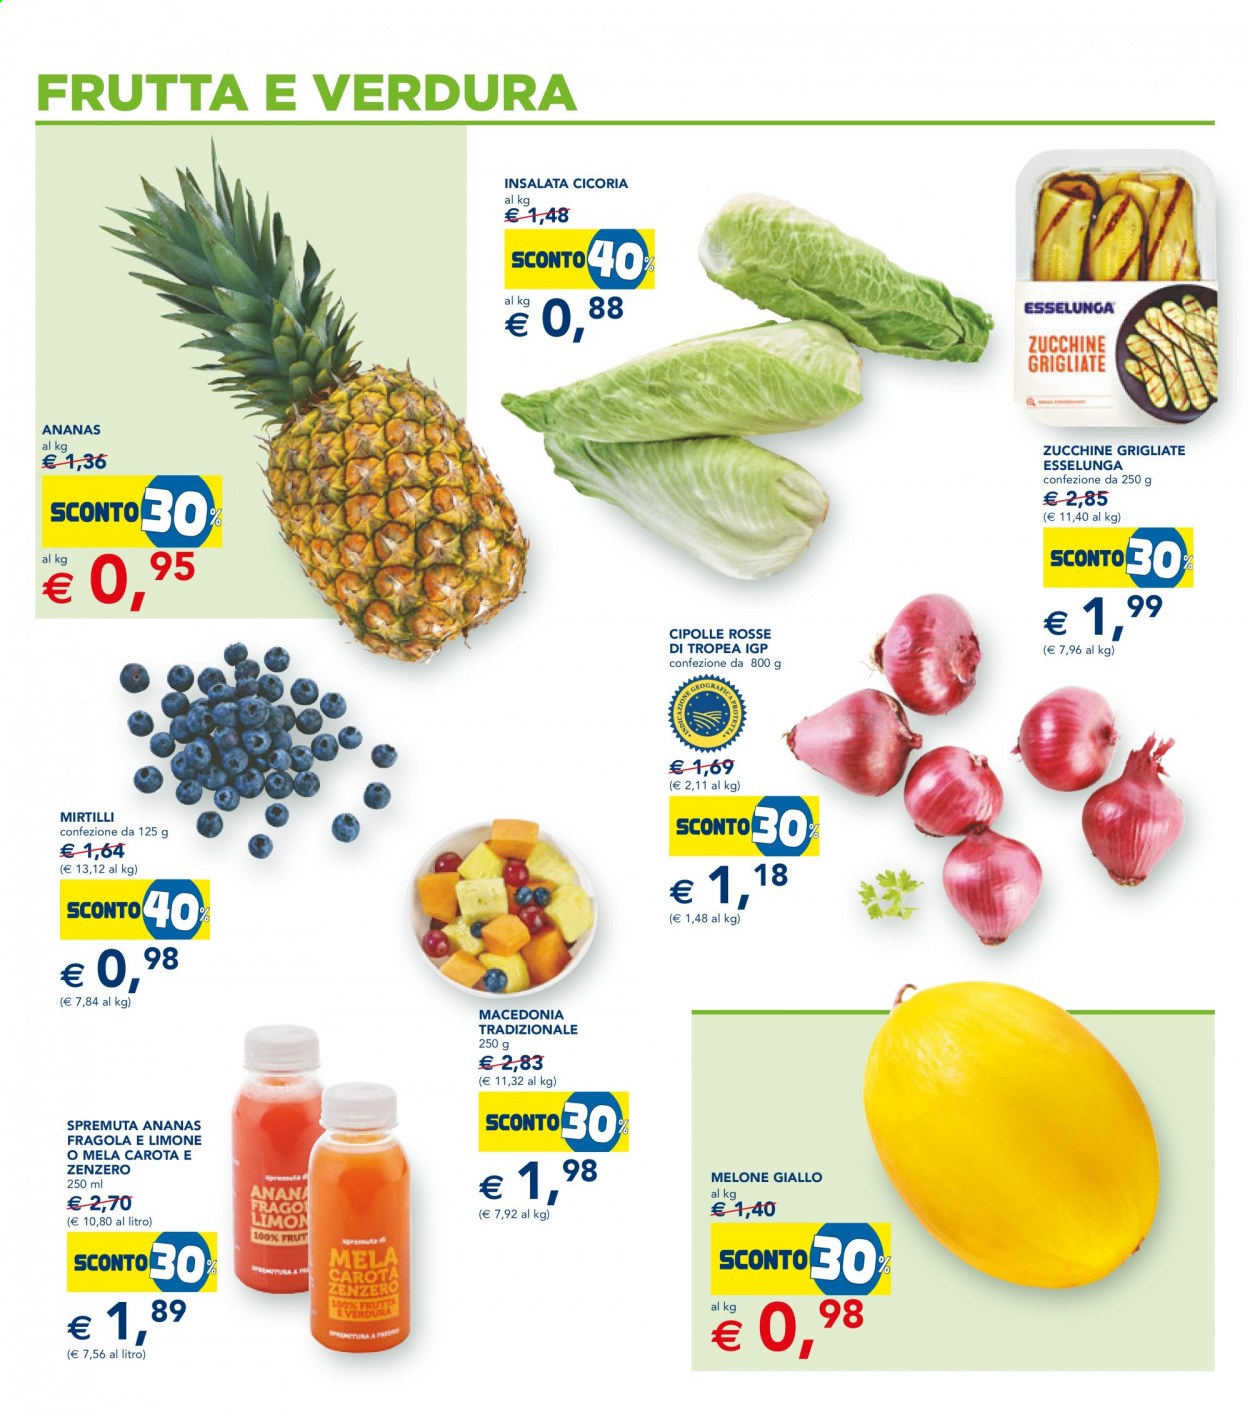 thumbnail - Volantino Esselunga - 1/7/2021 - 14/7/2021 - Prodotti in offerta - cicoria, cipolla, cipolla di tropea, zucchine, melone, mirtilli, melone giallo, zucchine grigliate, spremuta. Pagina 16.